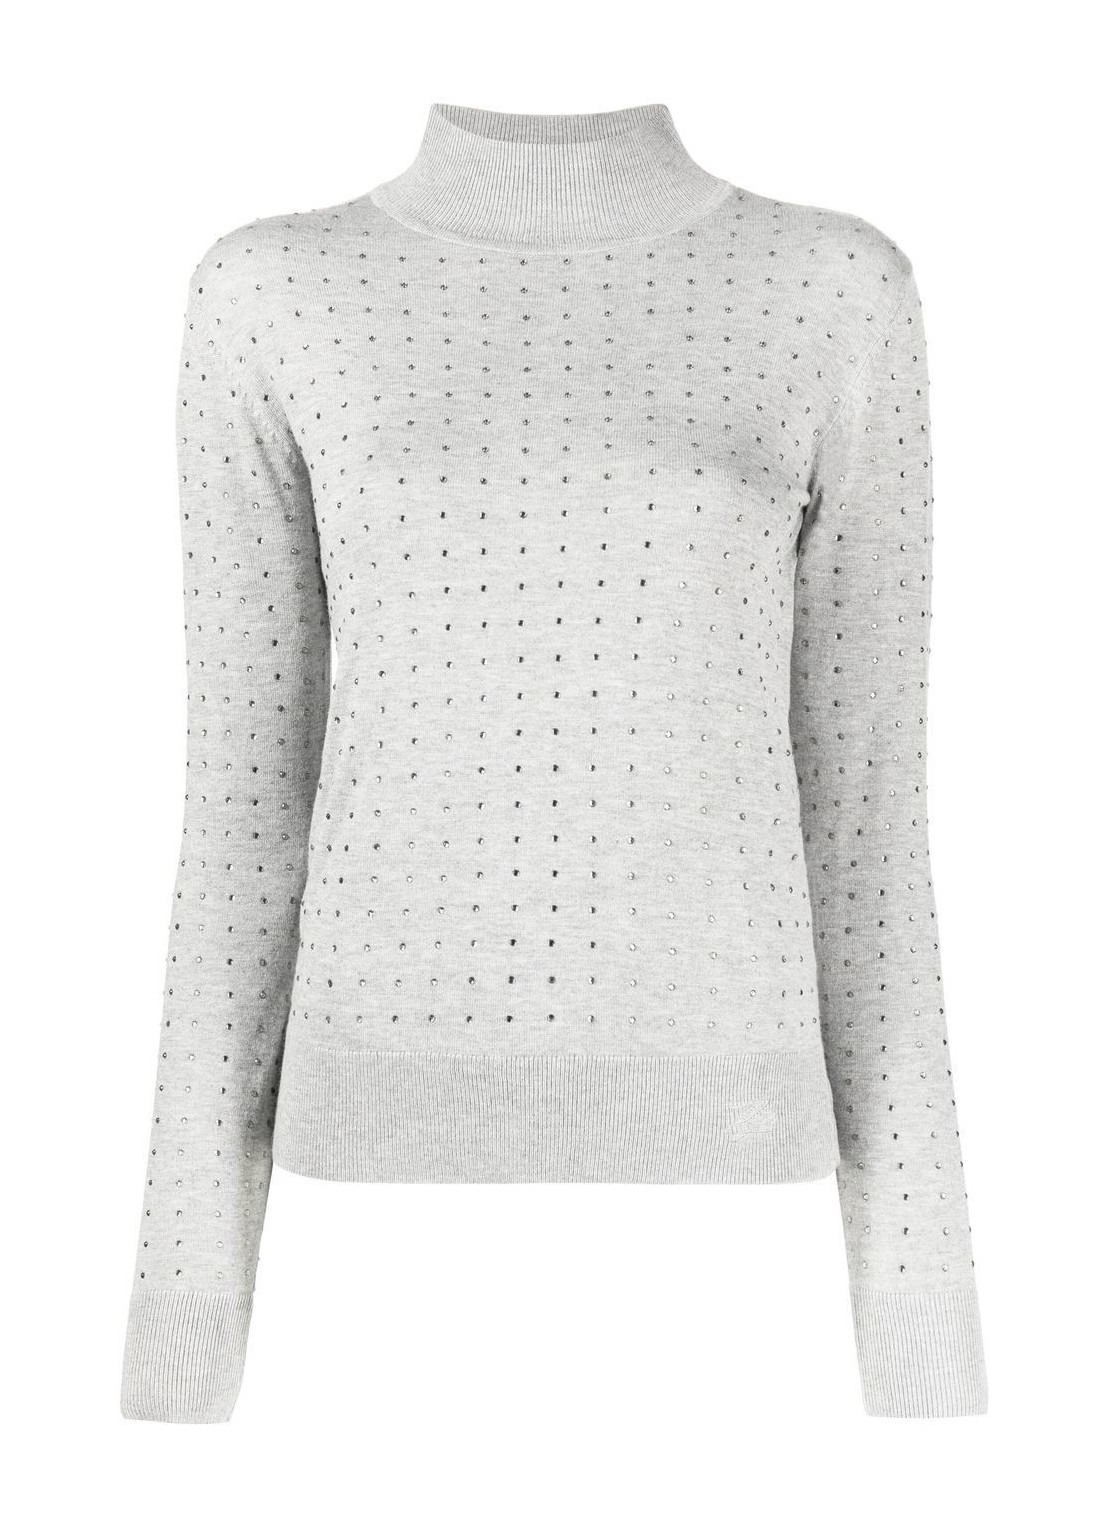 Punto karl lagerfeld knitwear woman rhinestone open back sweater 230w2005 255 talla L
 